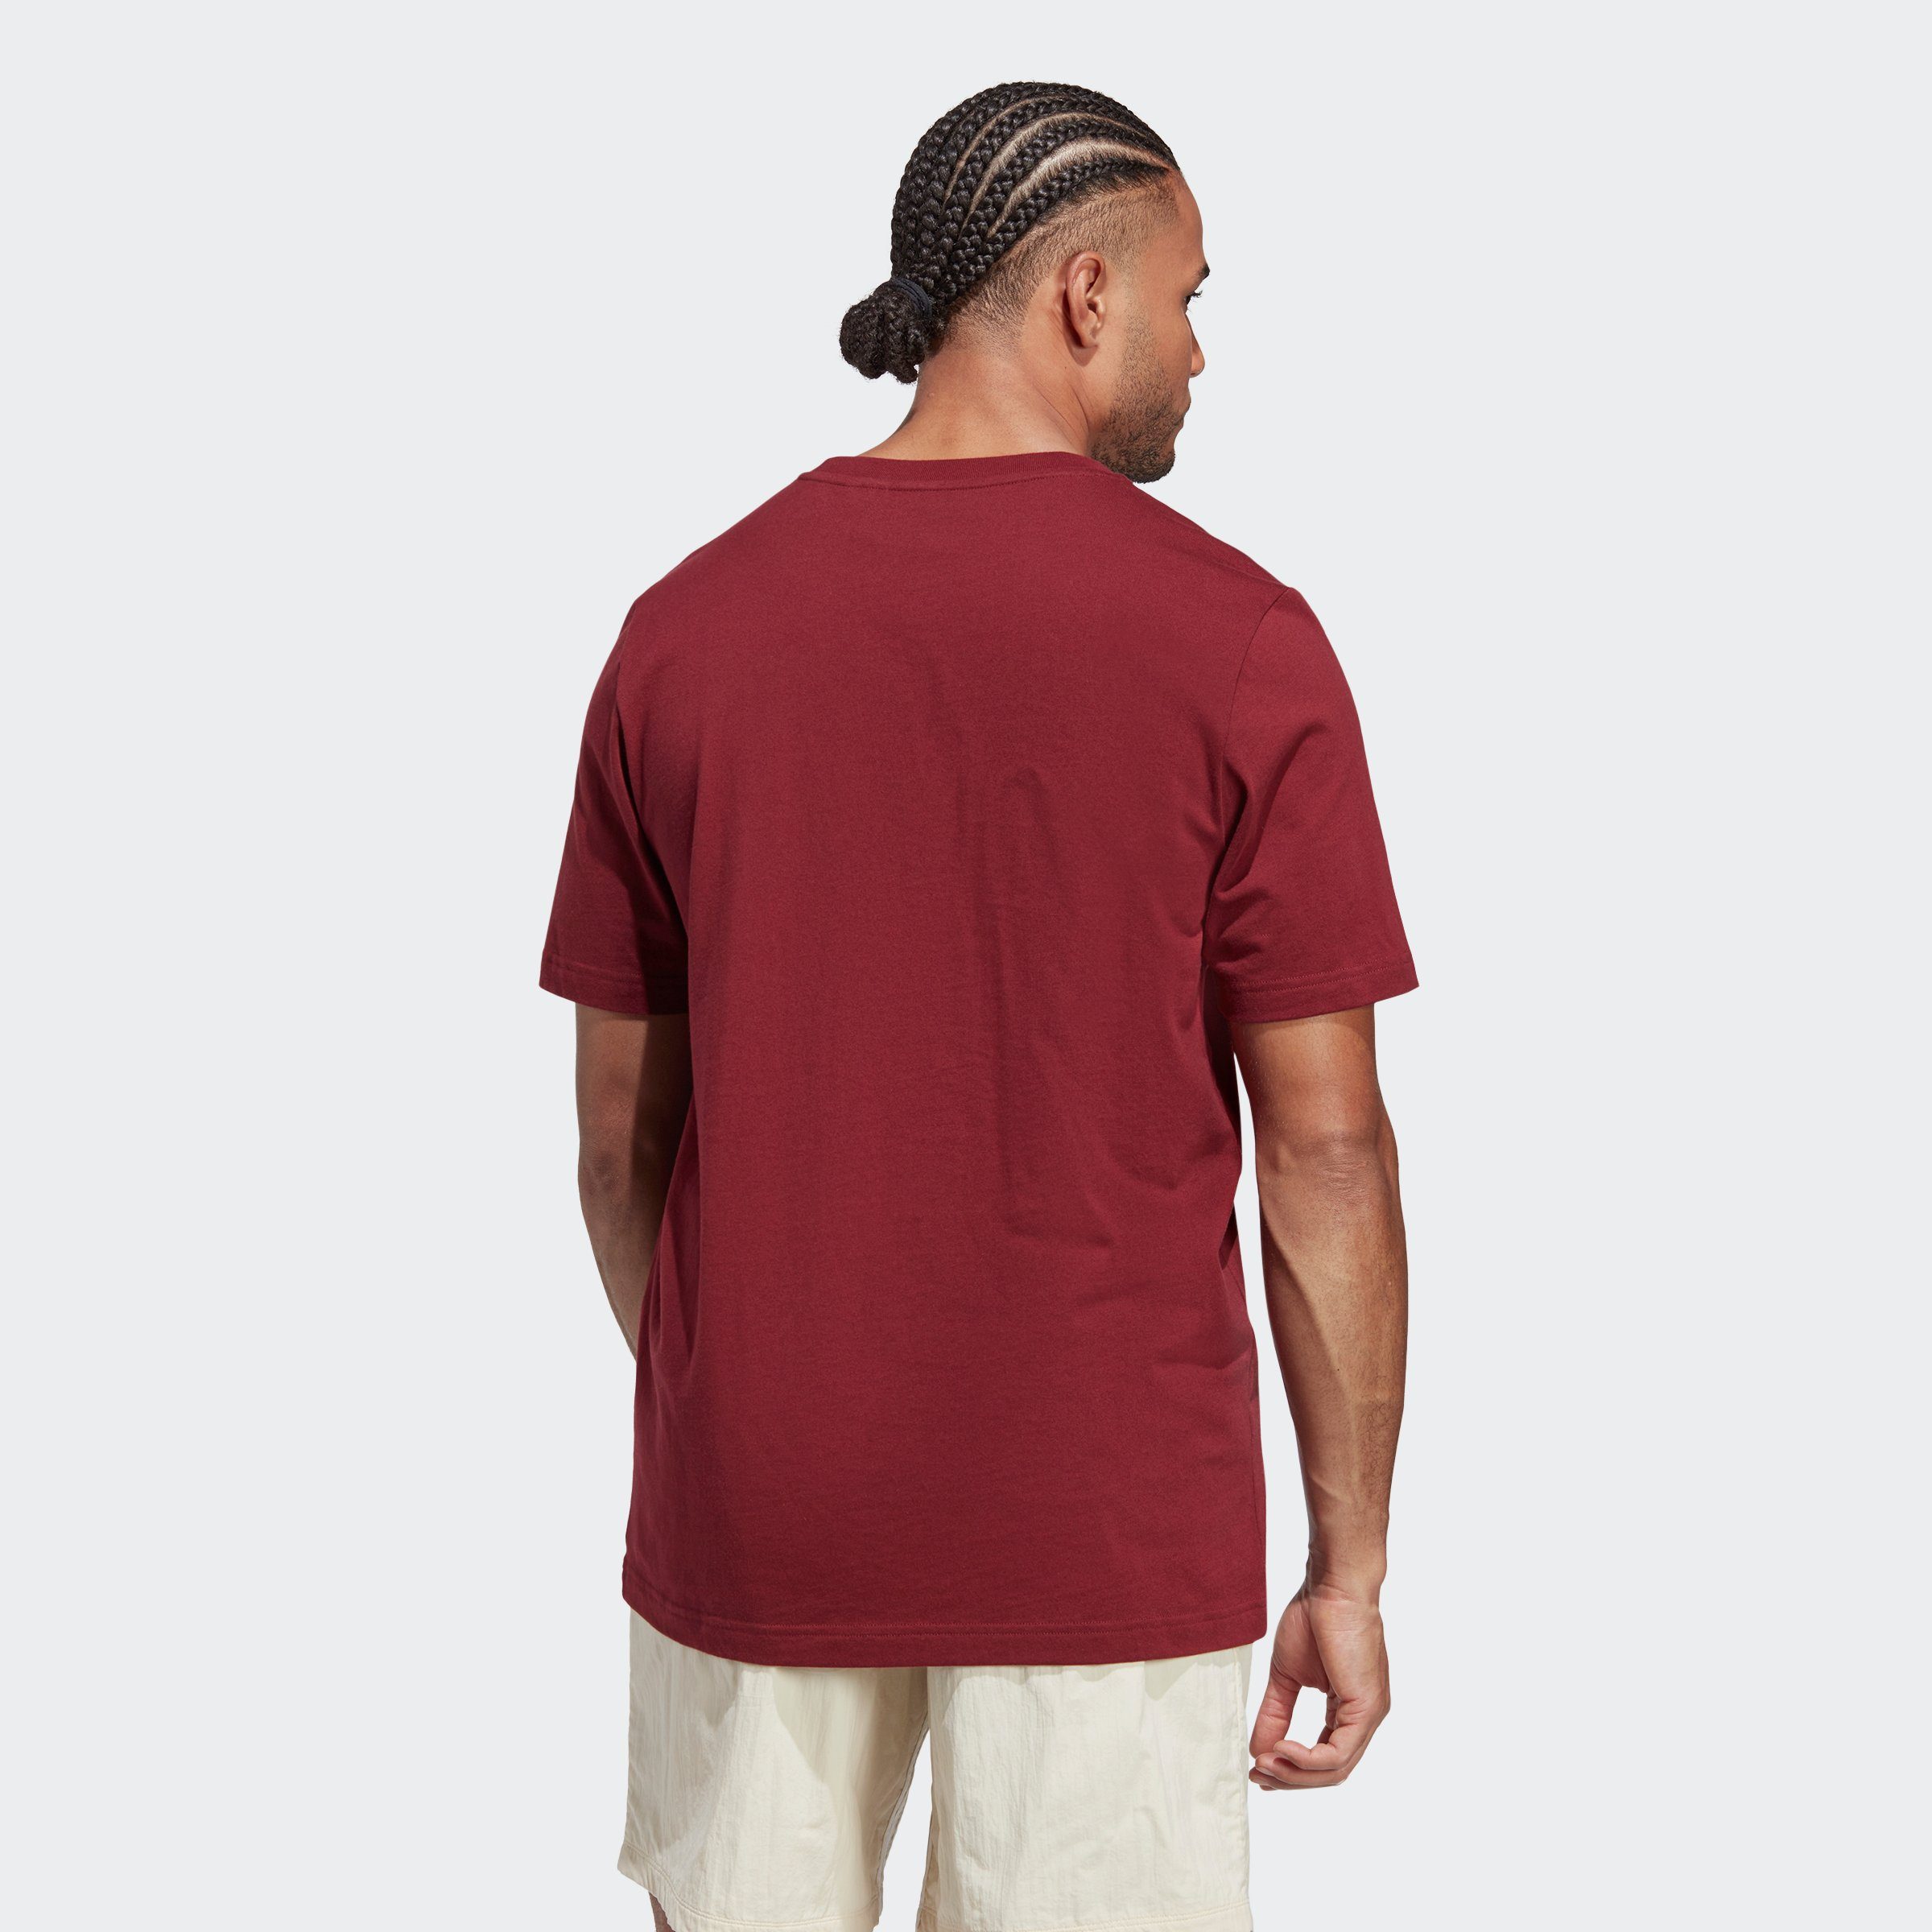 T-Shirt Originals ADIDAS RIFTA METRO AAC adidas